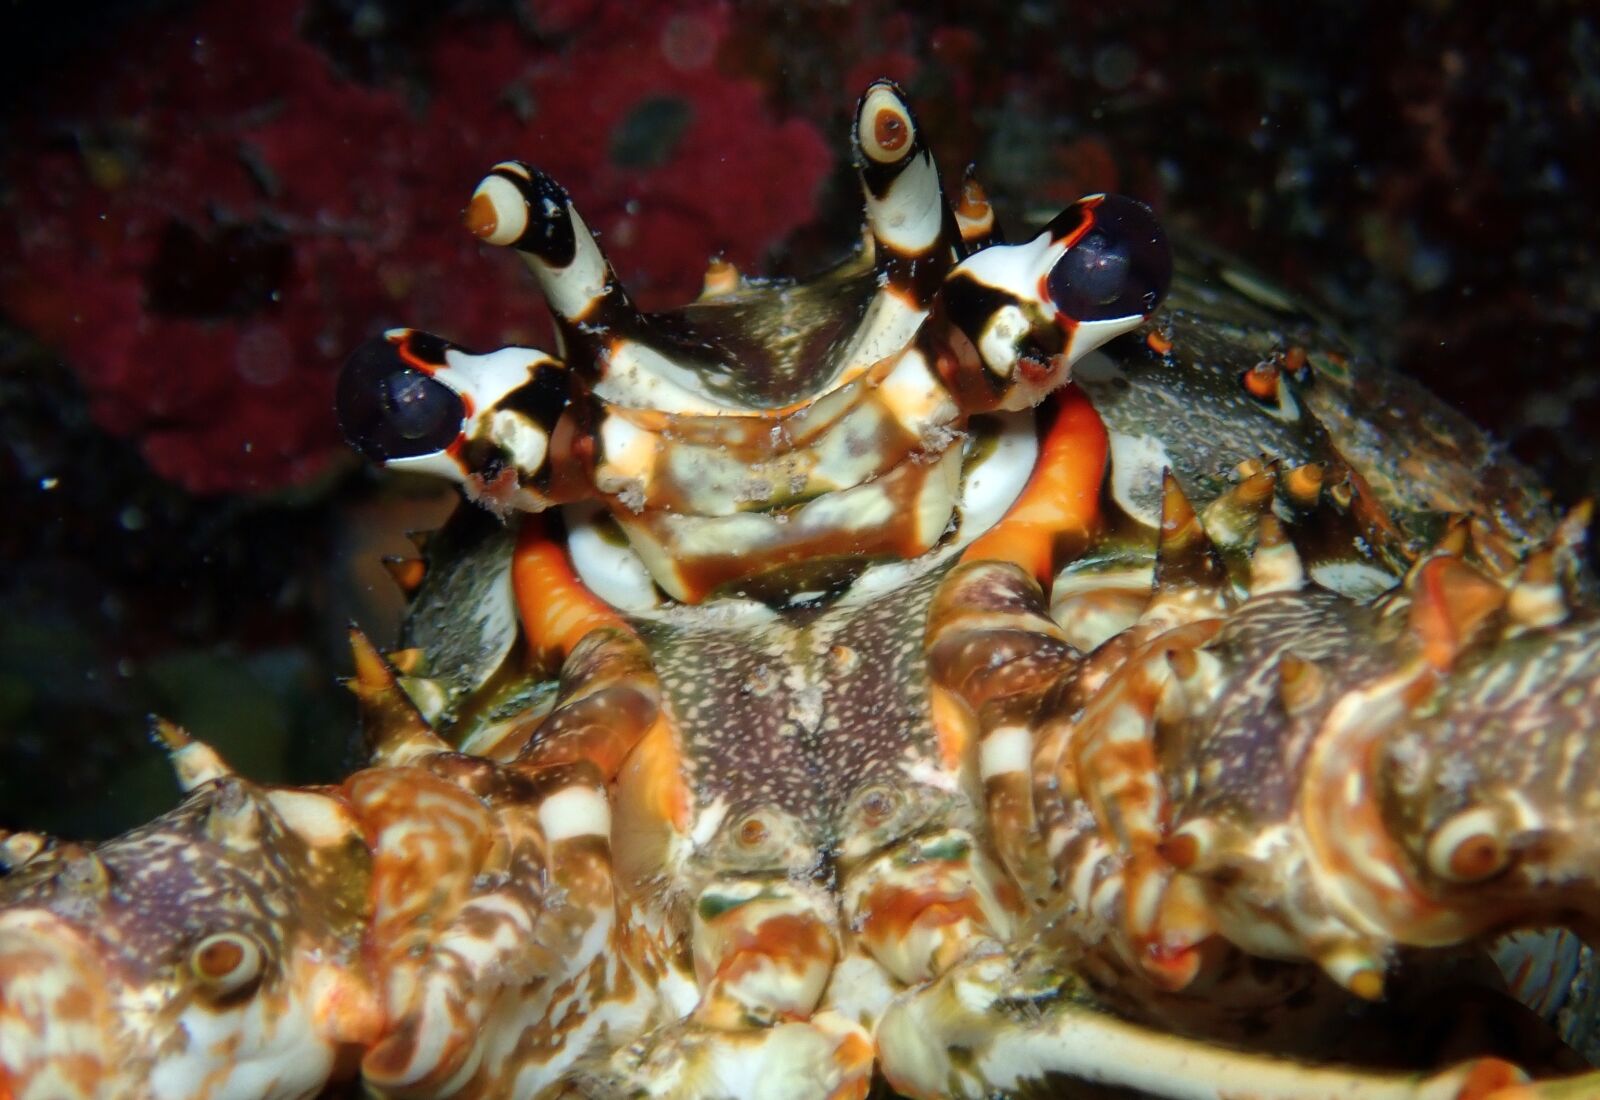 Olympus TG-5 sample photo. Lobster, underwater, ocean photography